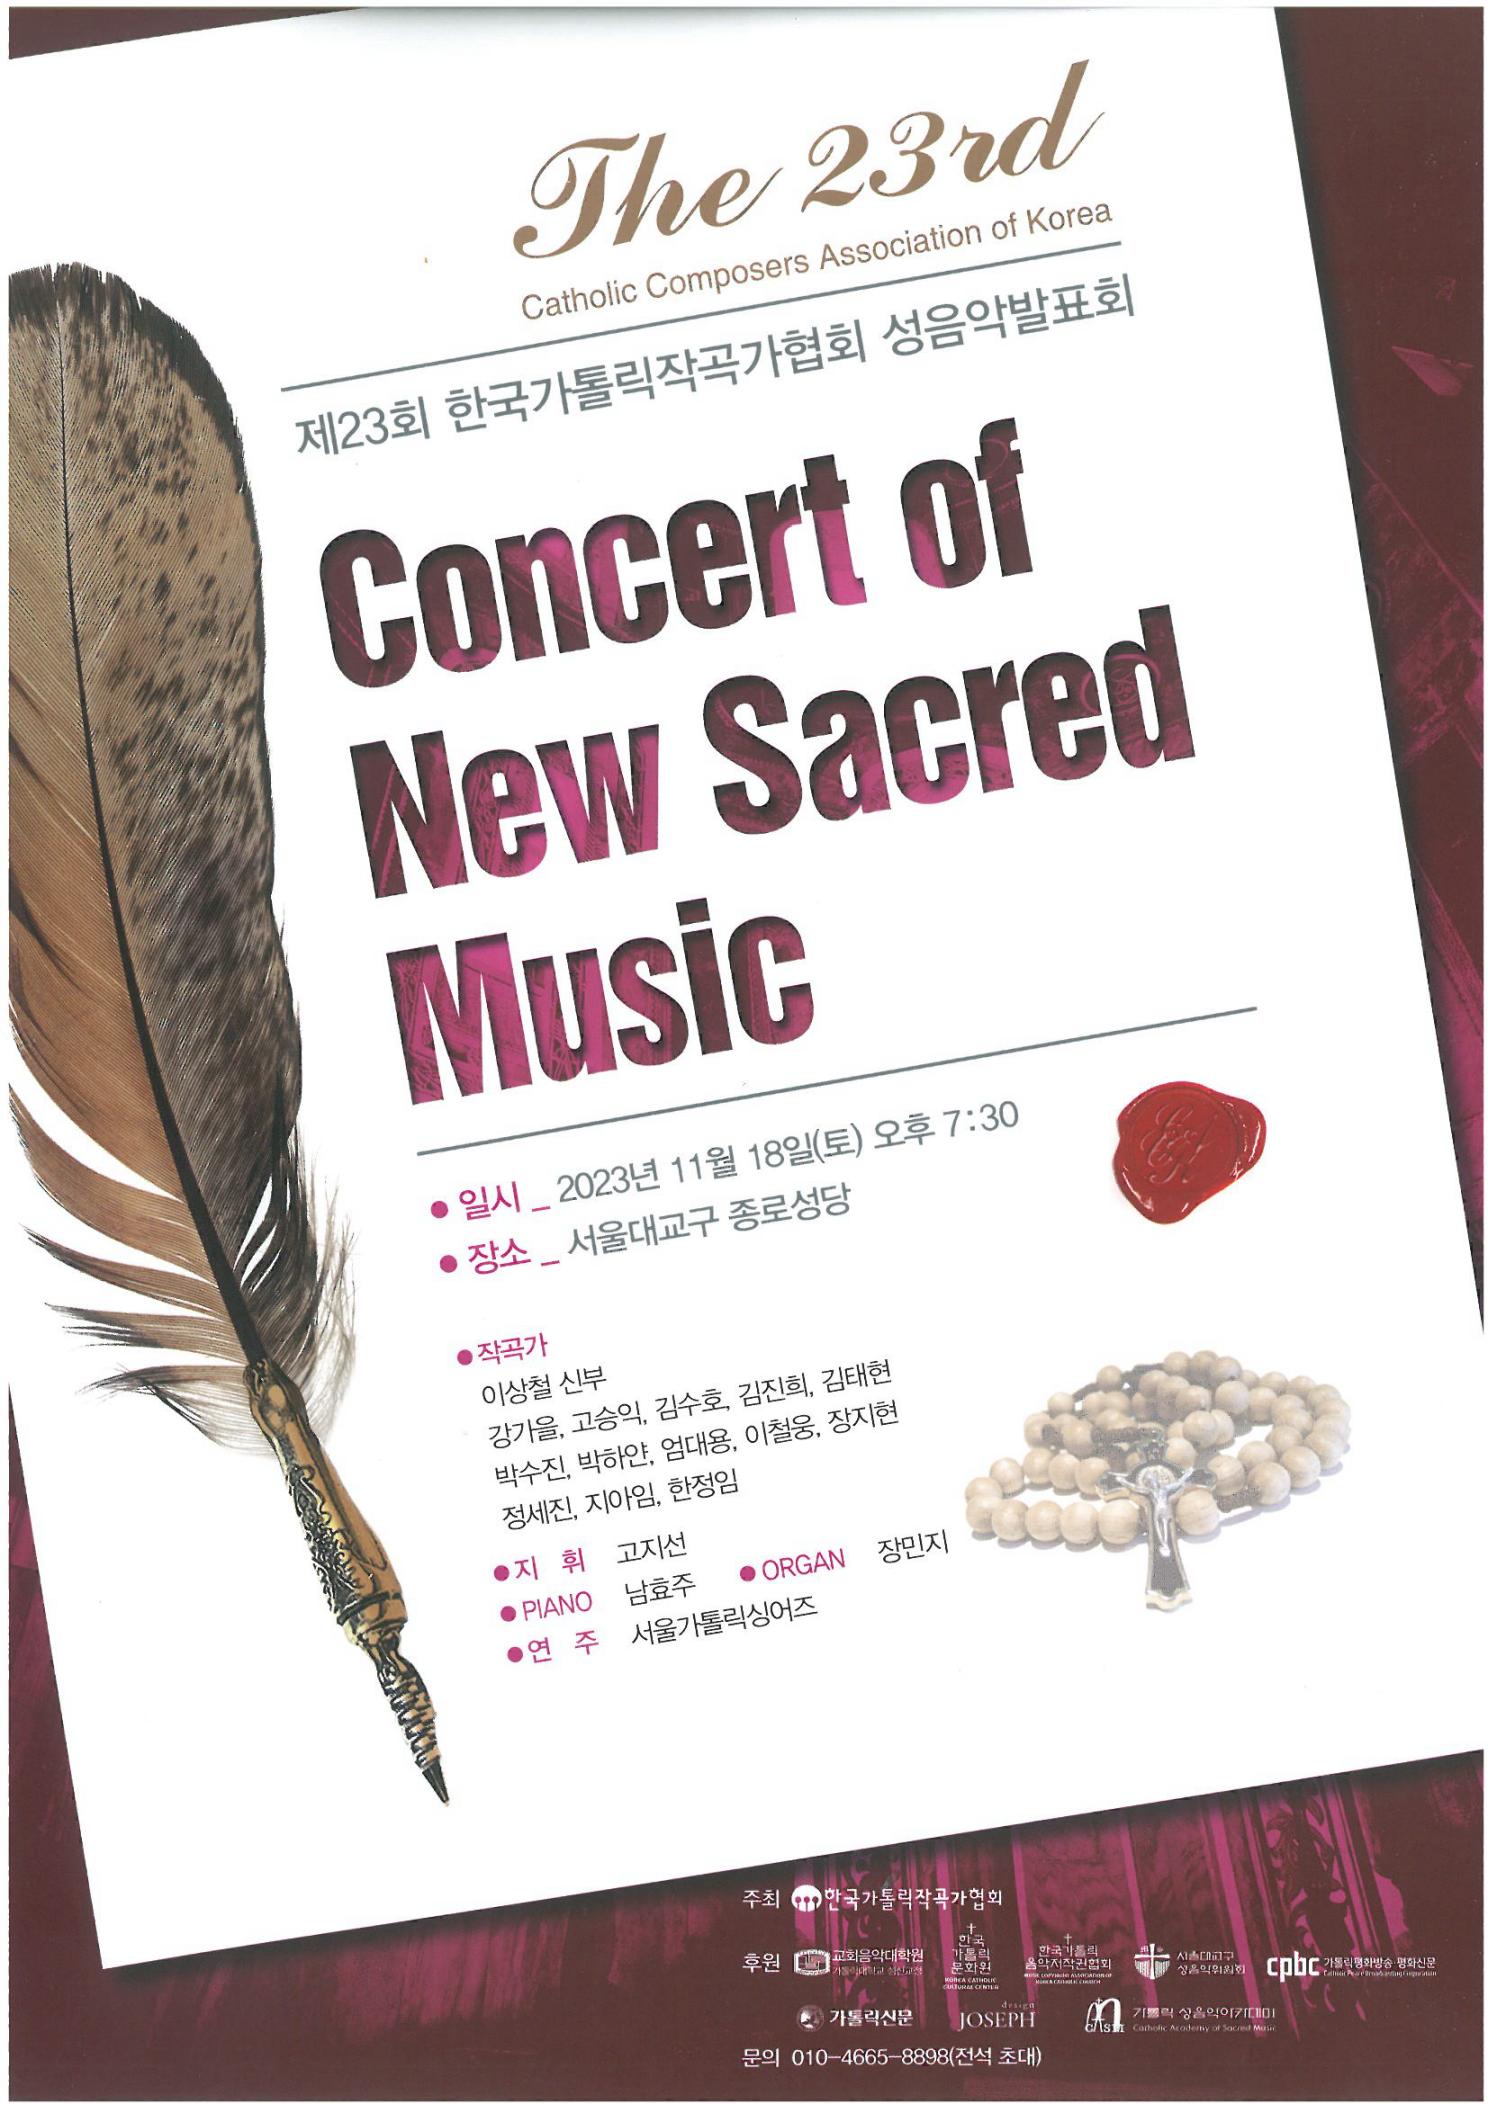 공연정보) 제23회 한국가톨릭작곡가협회 성음악발표회의 관련된 이미지 입니다.